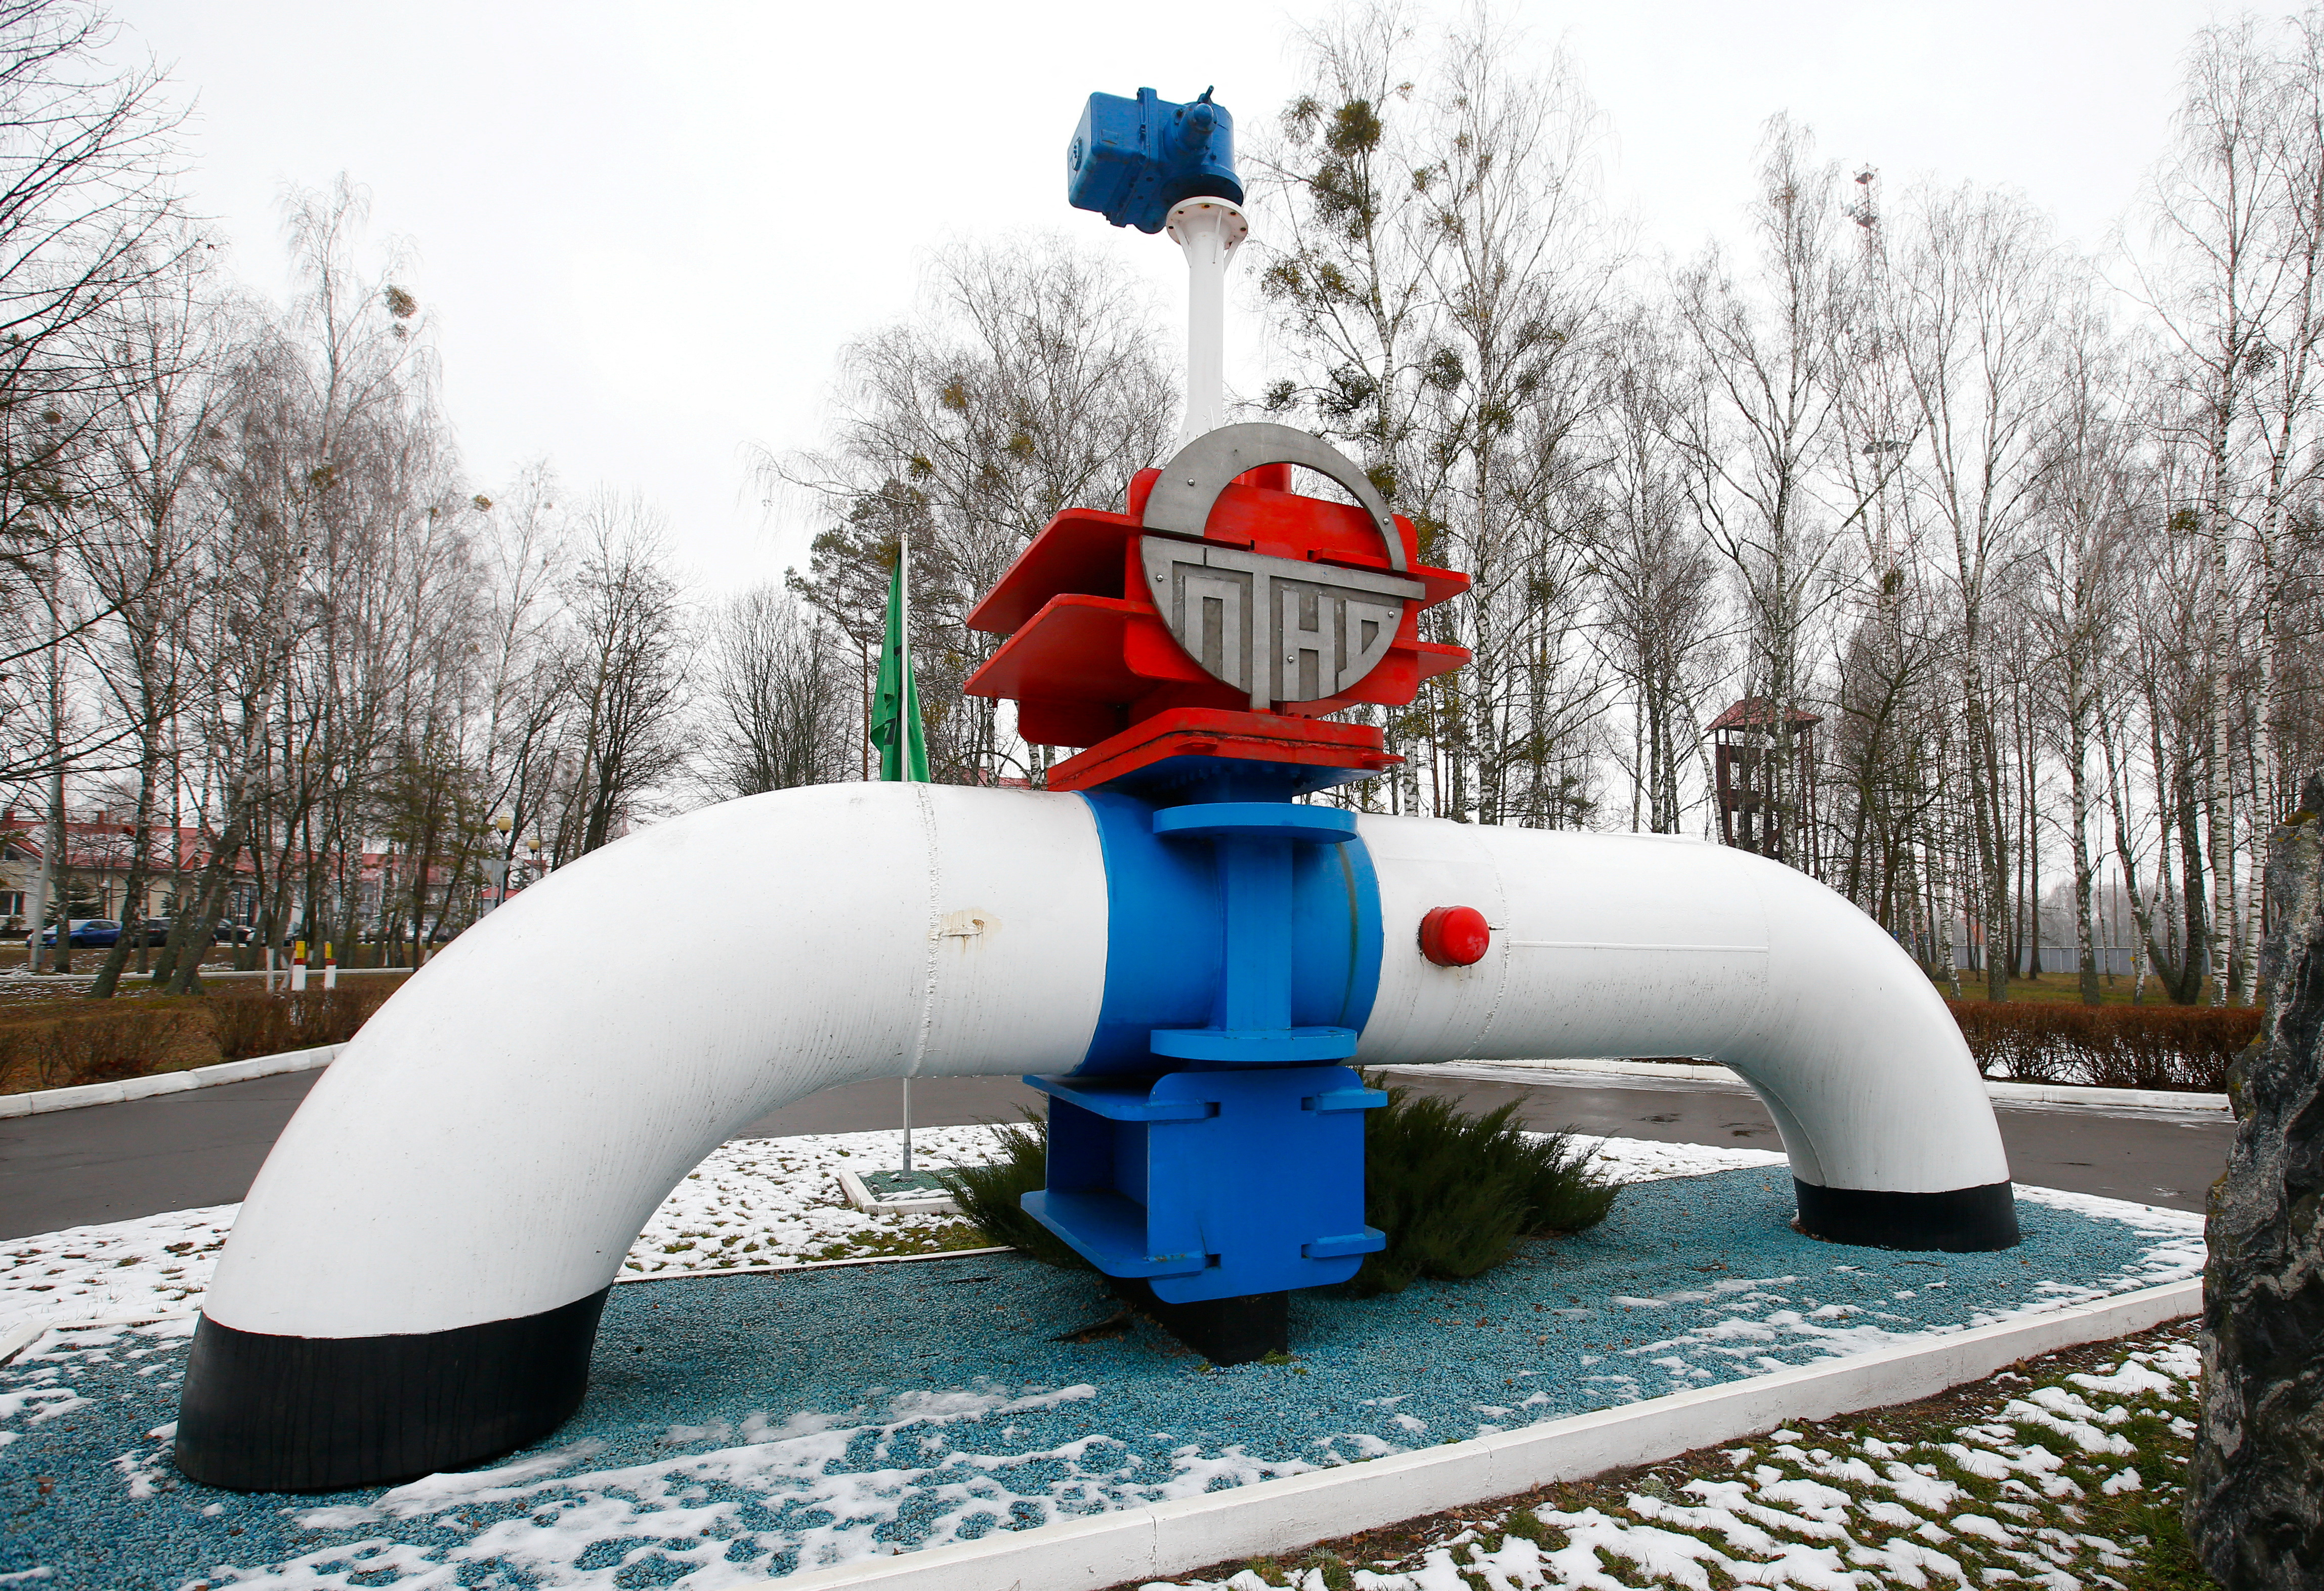 Mô hình đường ống được nhìn thấy ở lối vào chính của trạm bơm dầu Gomel Transneft